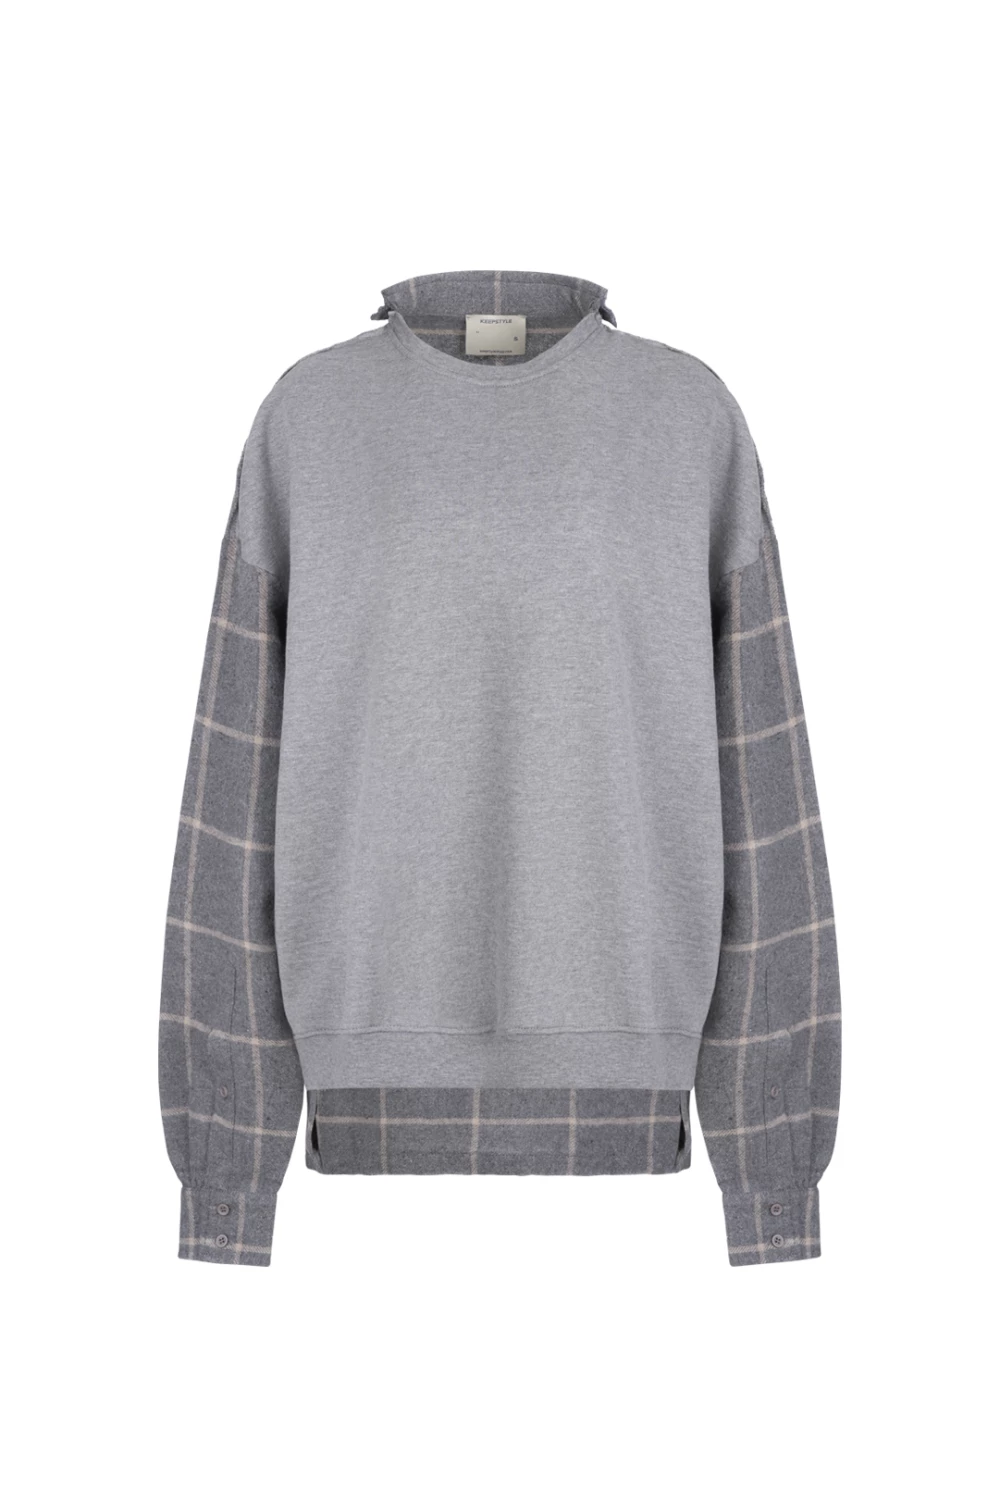 sweatshirt a la shirt in gray melange color